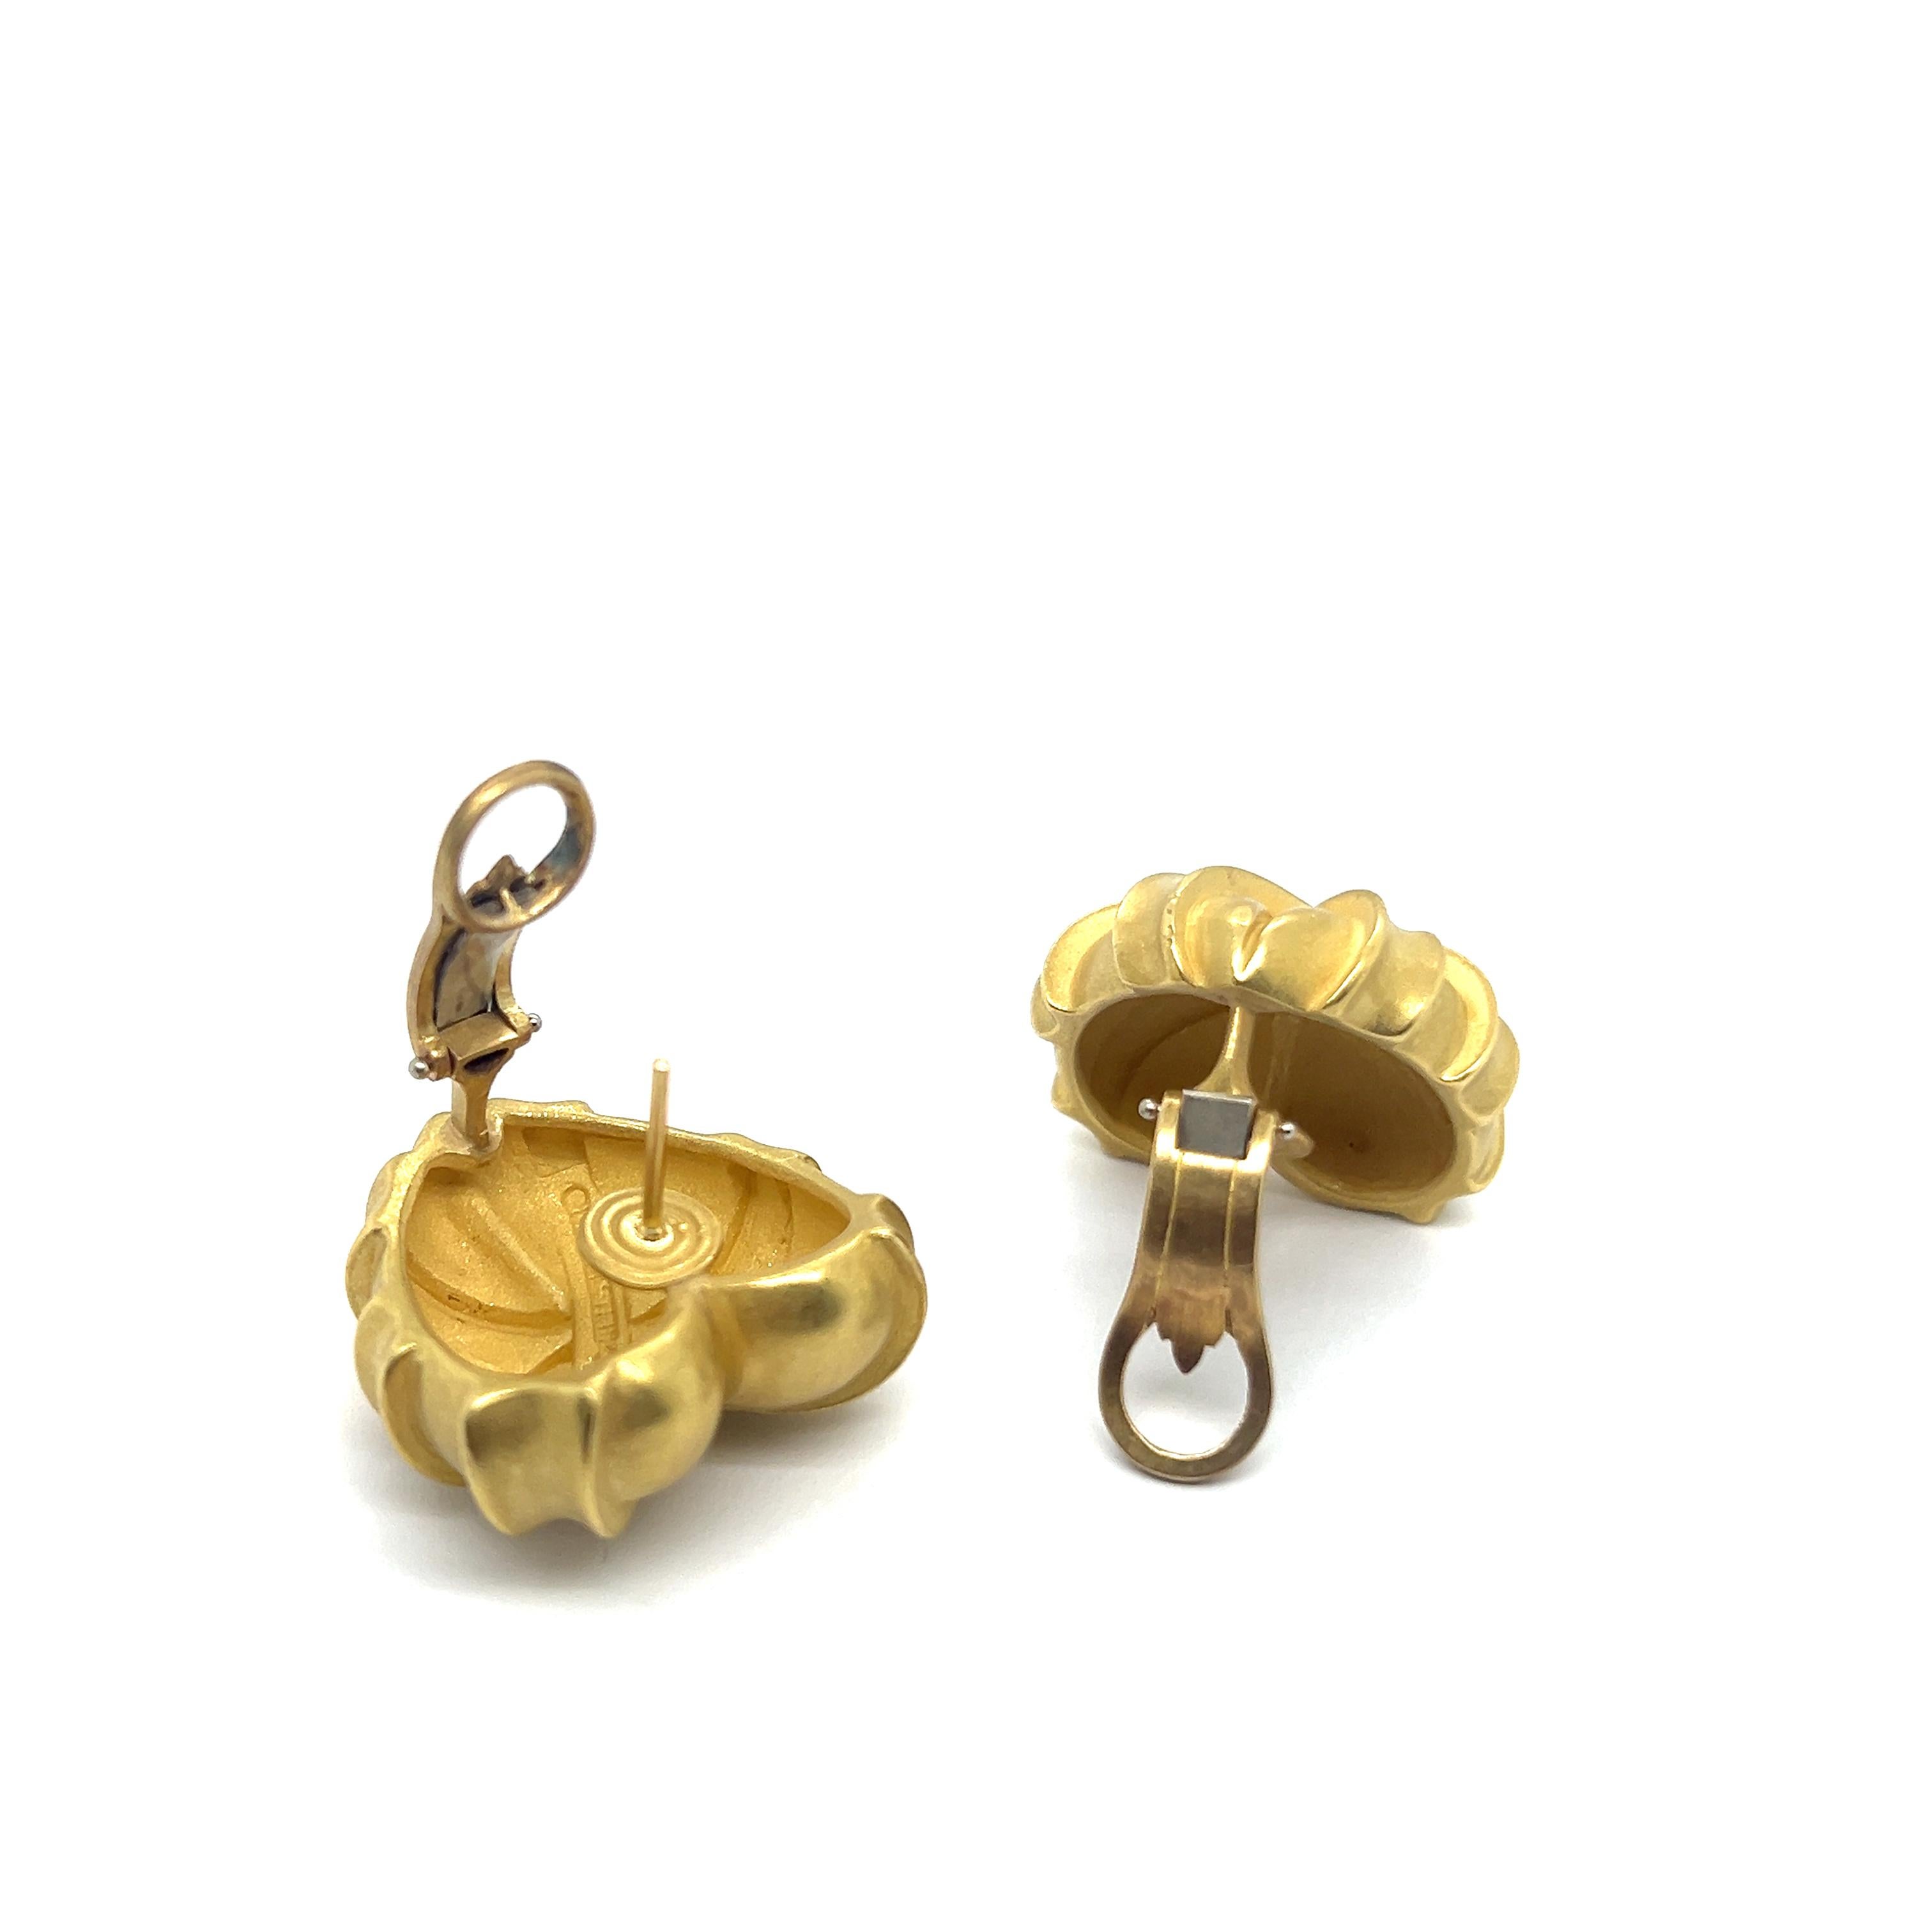 Heart-shaped Earrings in 18 Karat Yellow Gold by Kieselstein-Cord For Sale 2